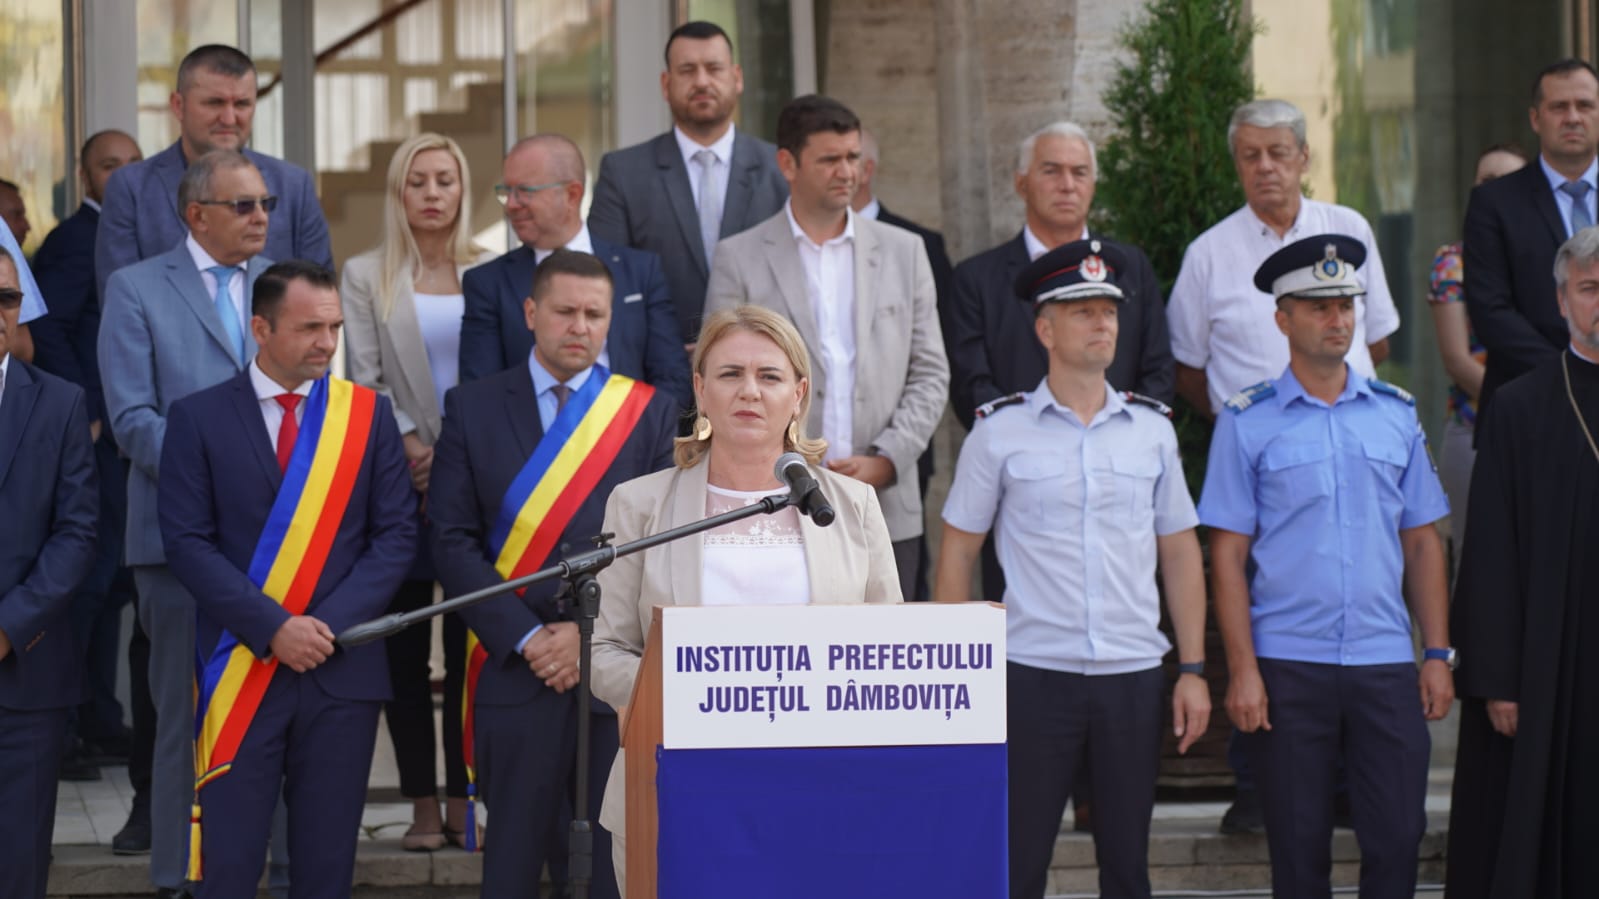 Ziua imnului naţional al României - "Deşteaptă-te române!", marcată cum se cuvine și la Târgoviște 